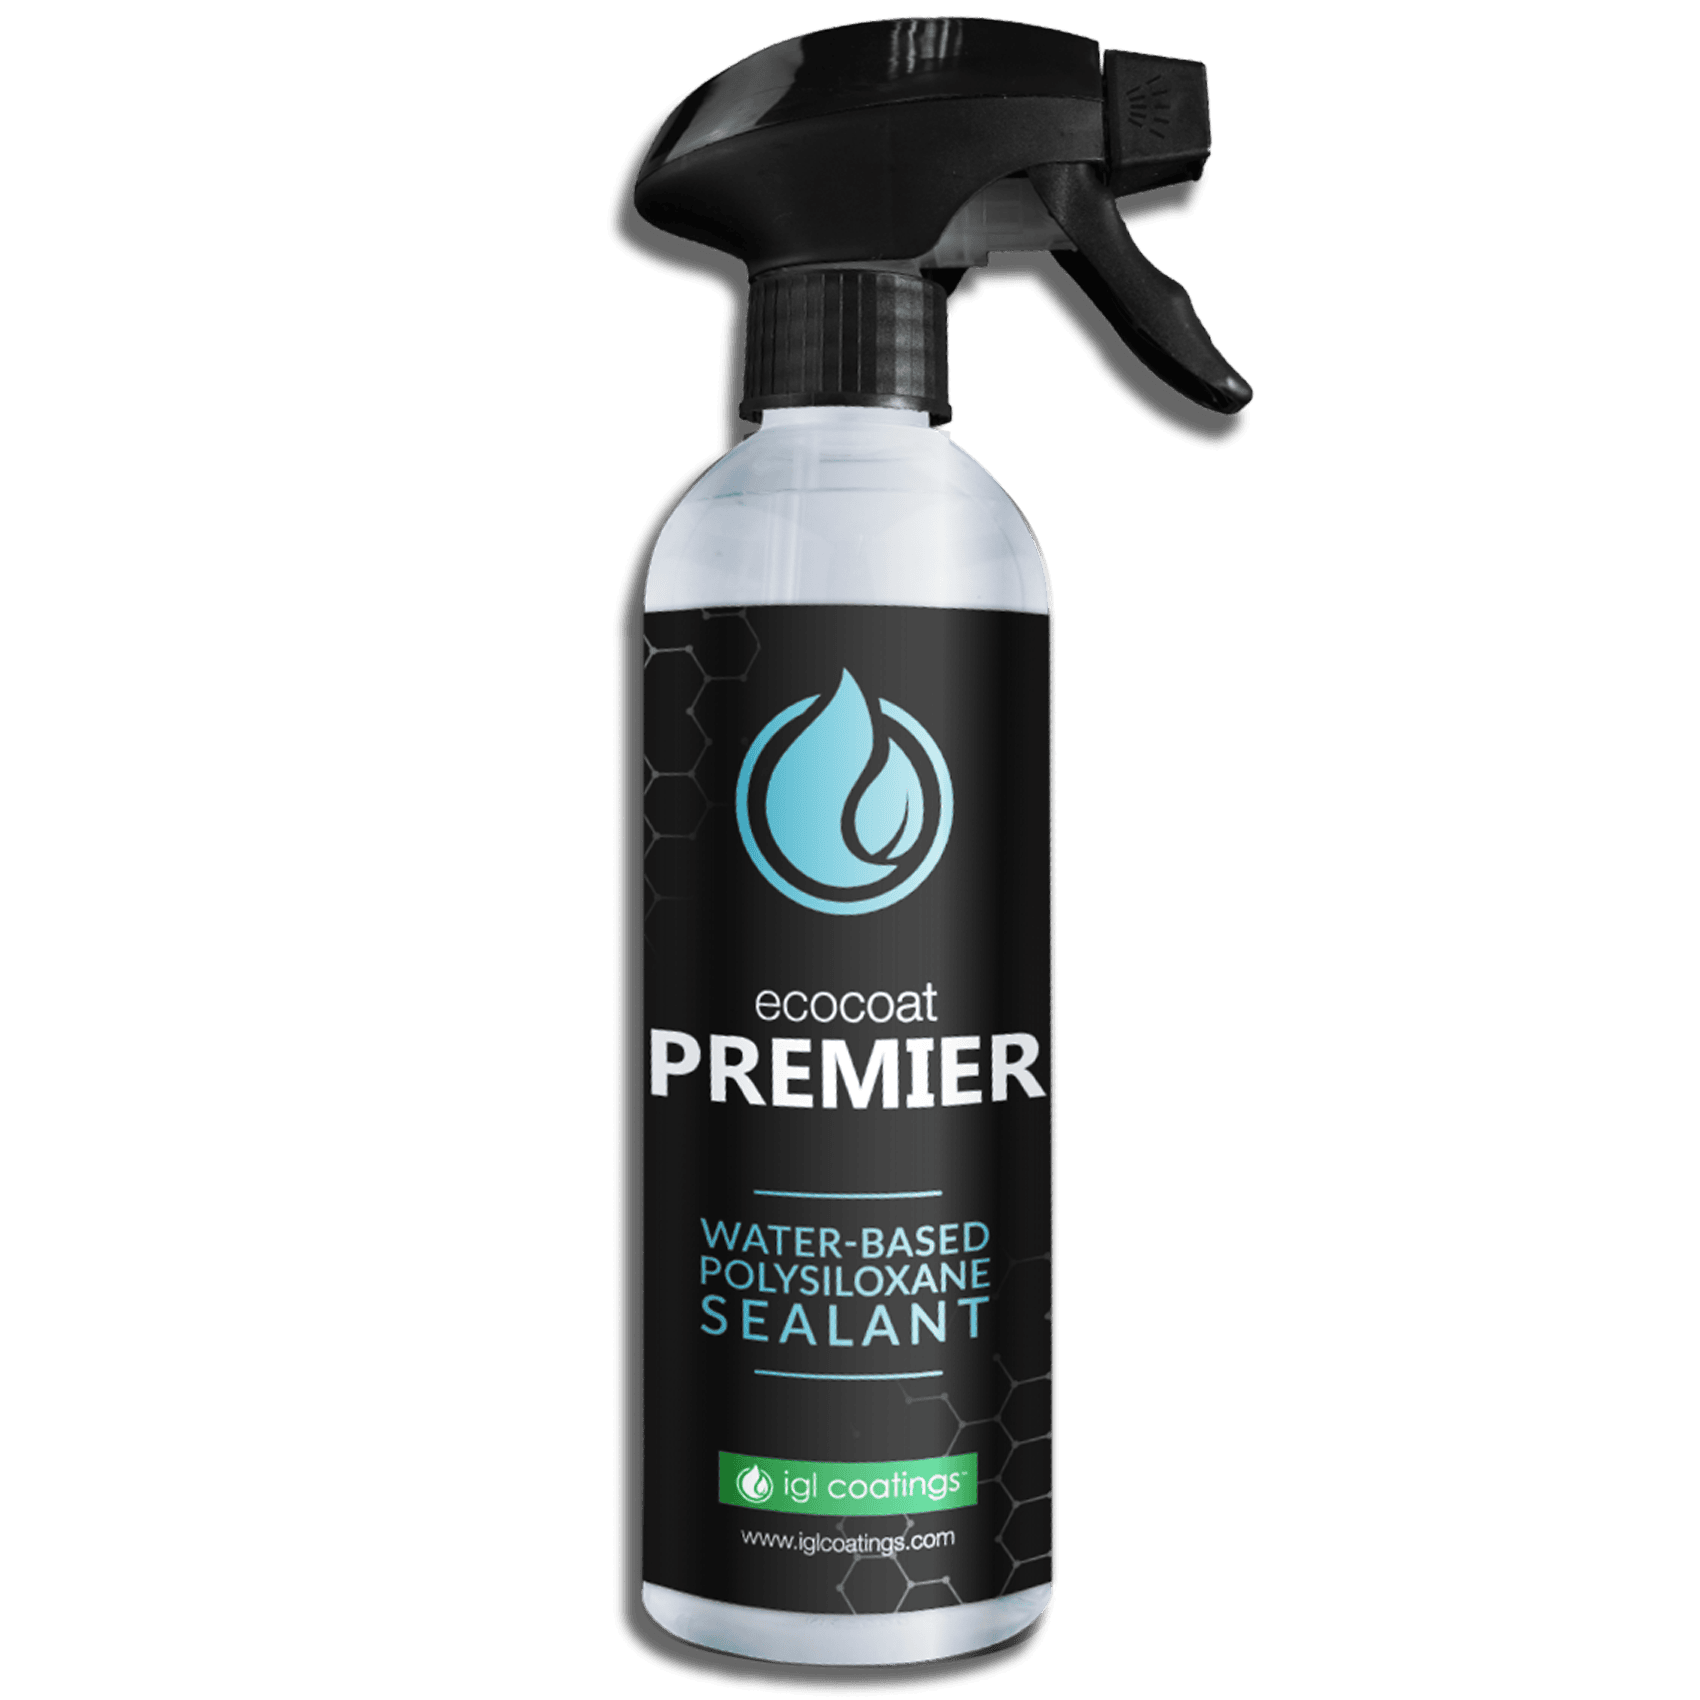 Premier spray kerámiabevonat: az autóápolás új szintje a maximális fényesség érdekében.